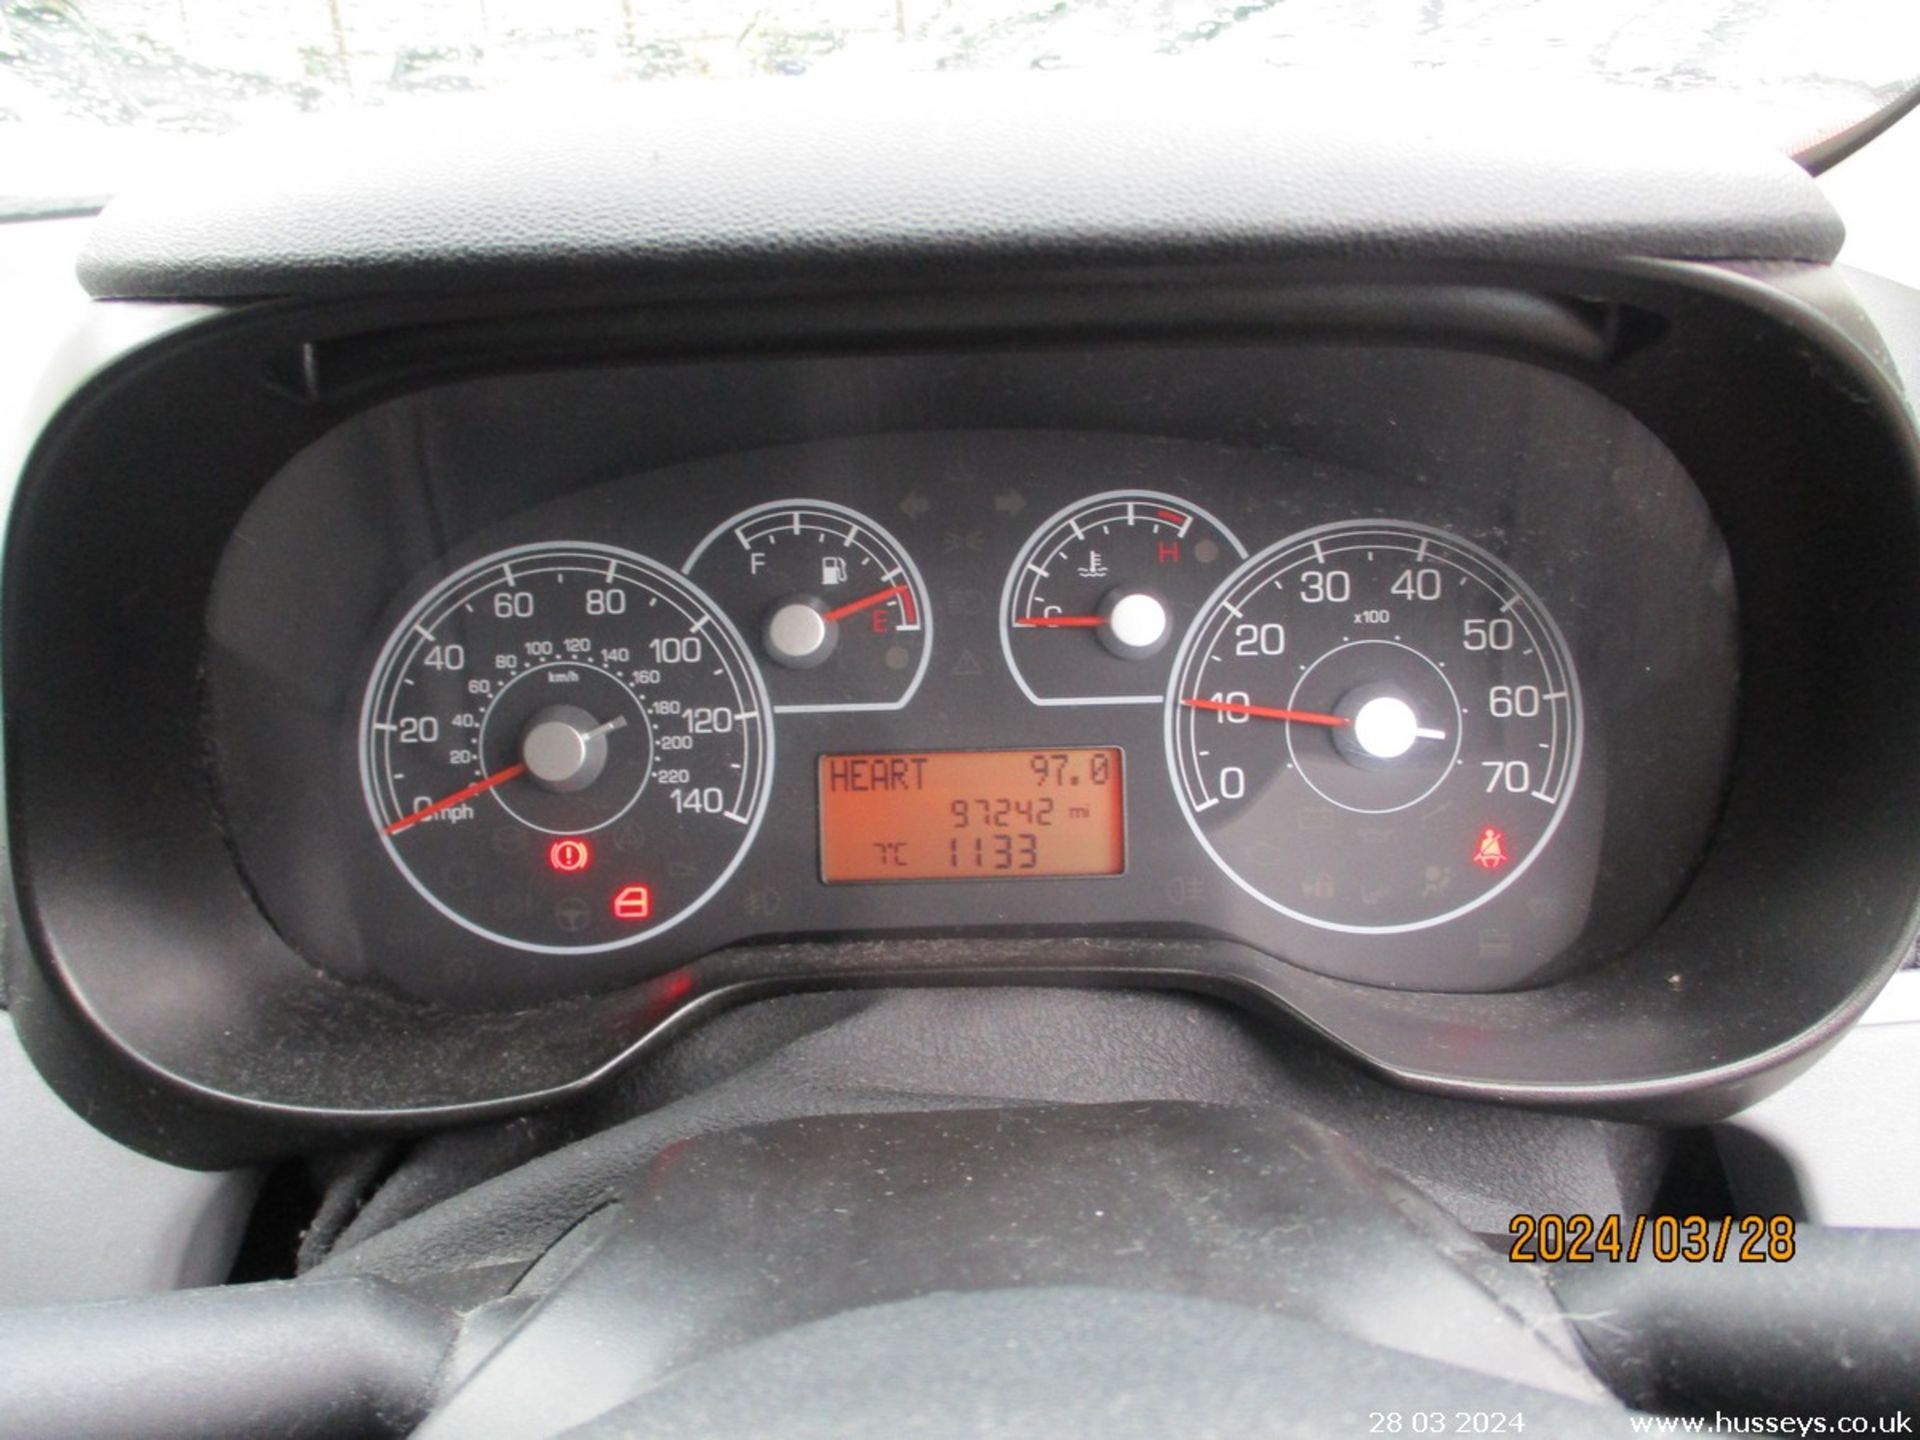 08/58 FIAT GRAND PUNTO ACTIVE 360 - 1242cc 5dr Hatchback (Grey, 97k) - Image 10 of 17